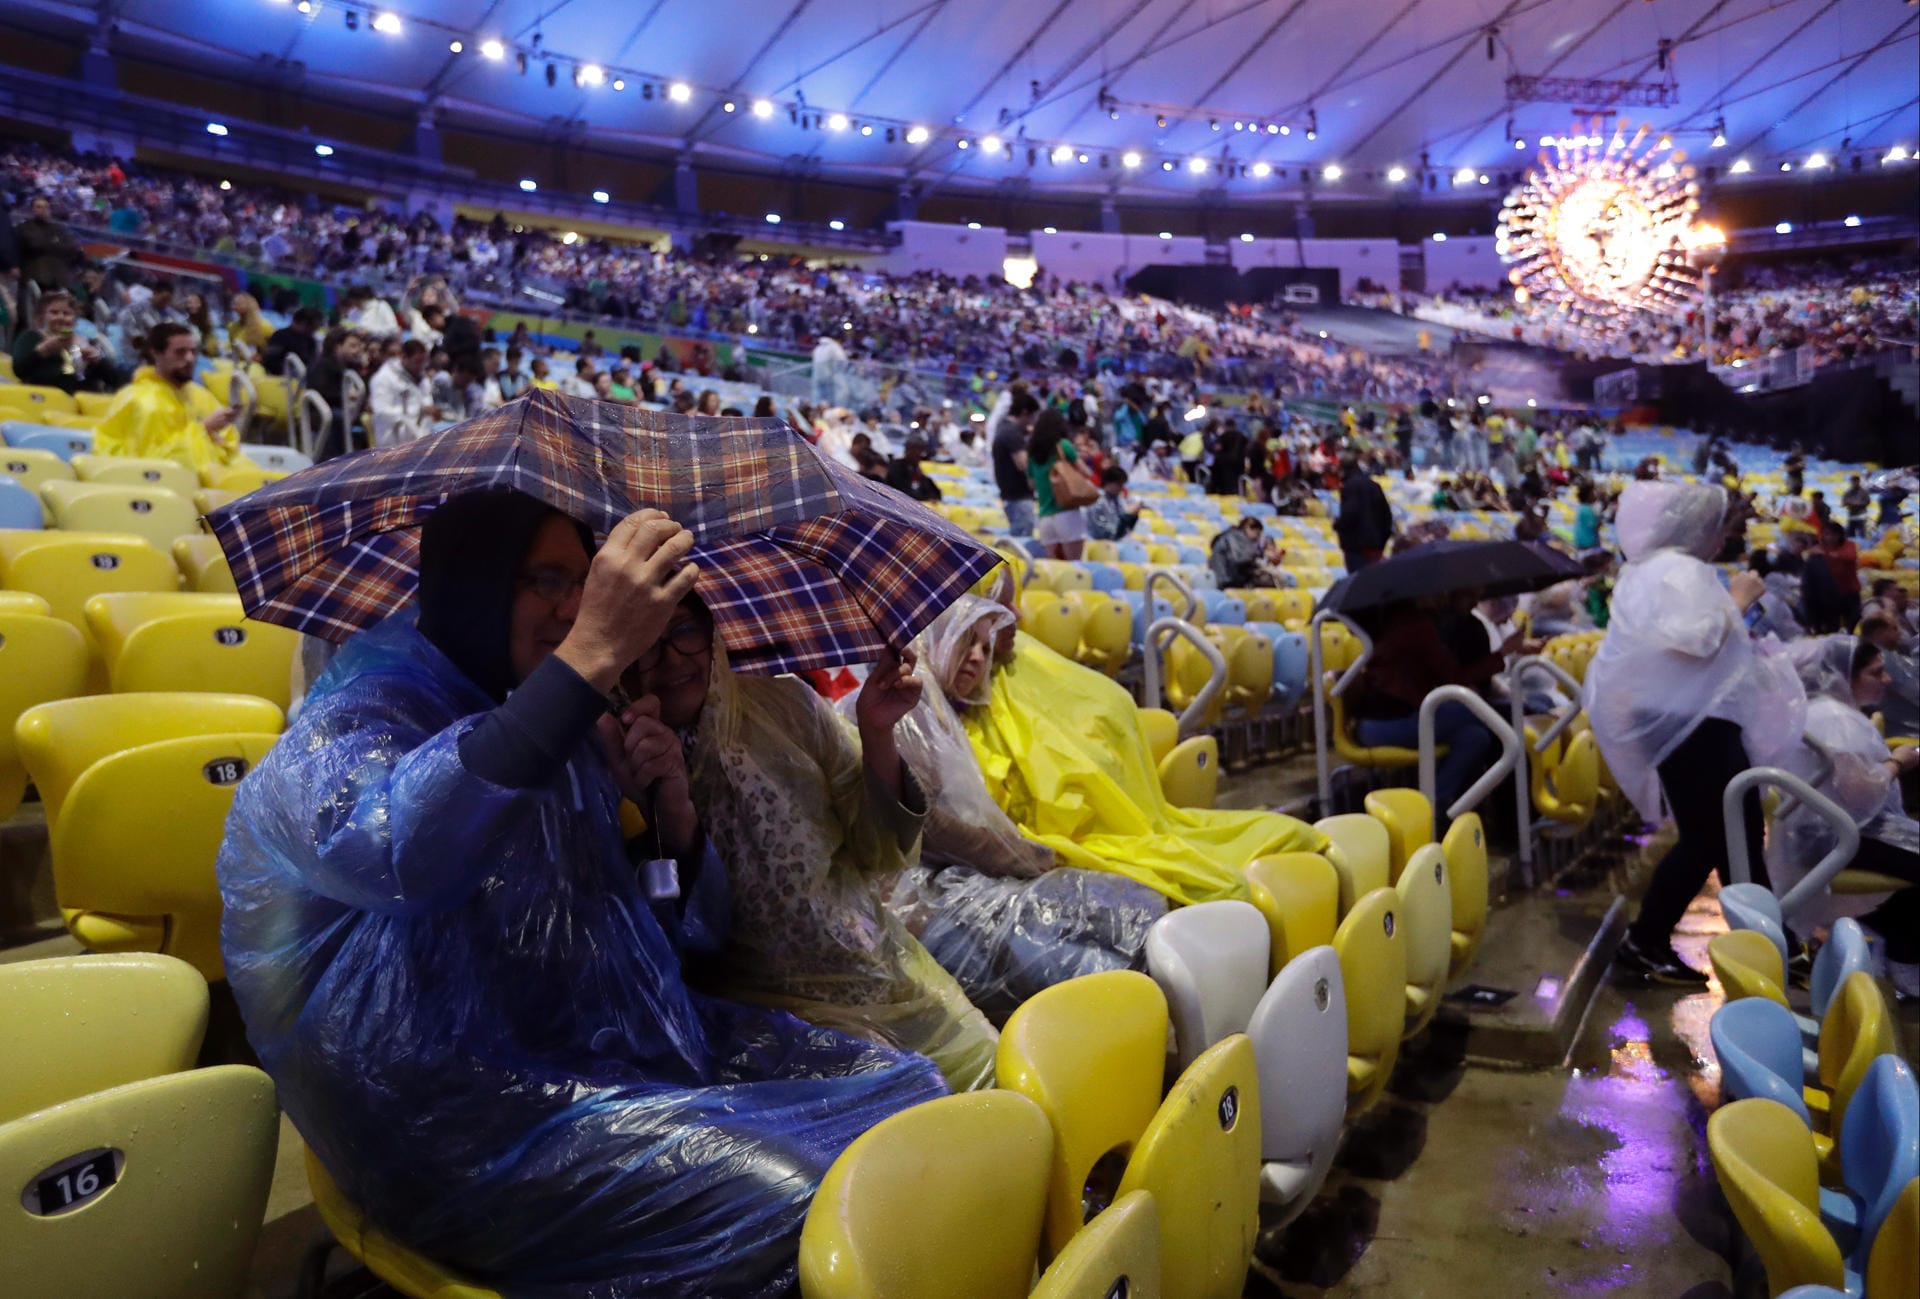 Ganz schön ungemütlich: Schon vor der Abschlussfeier fegten heftige Windböen durch das Maracana-Stadion - auch starke Regenschauer begleiteten die Zeremonie.